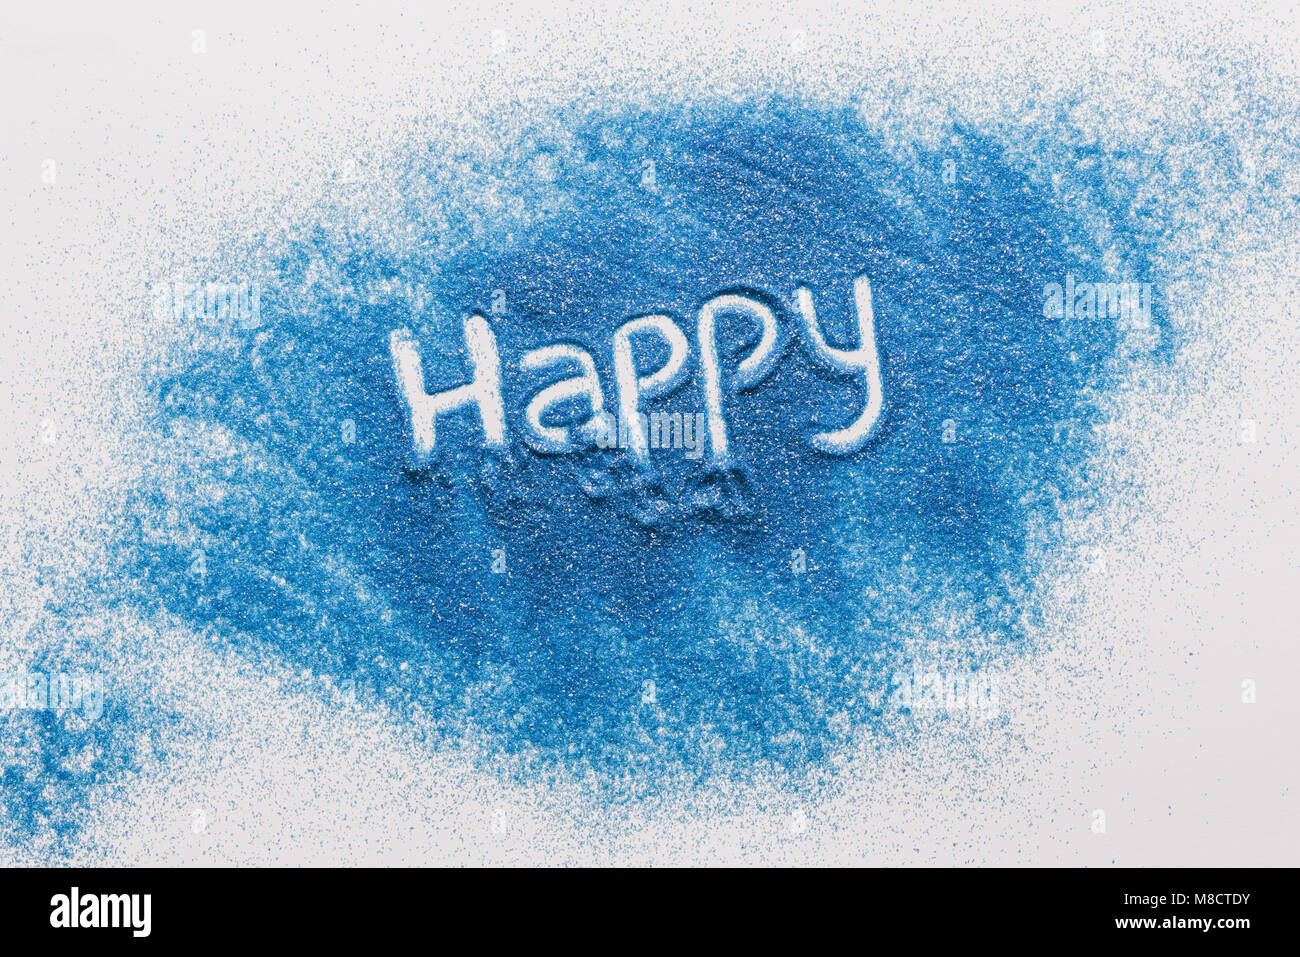 Vista superior del signo feliz hecha de arena azul en la superficie blanca Foto de stock